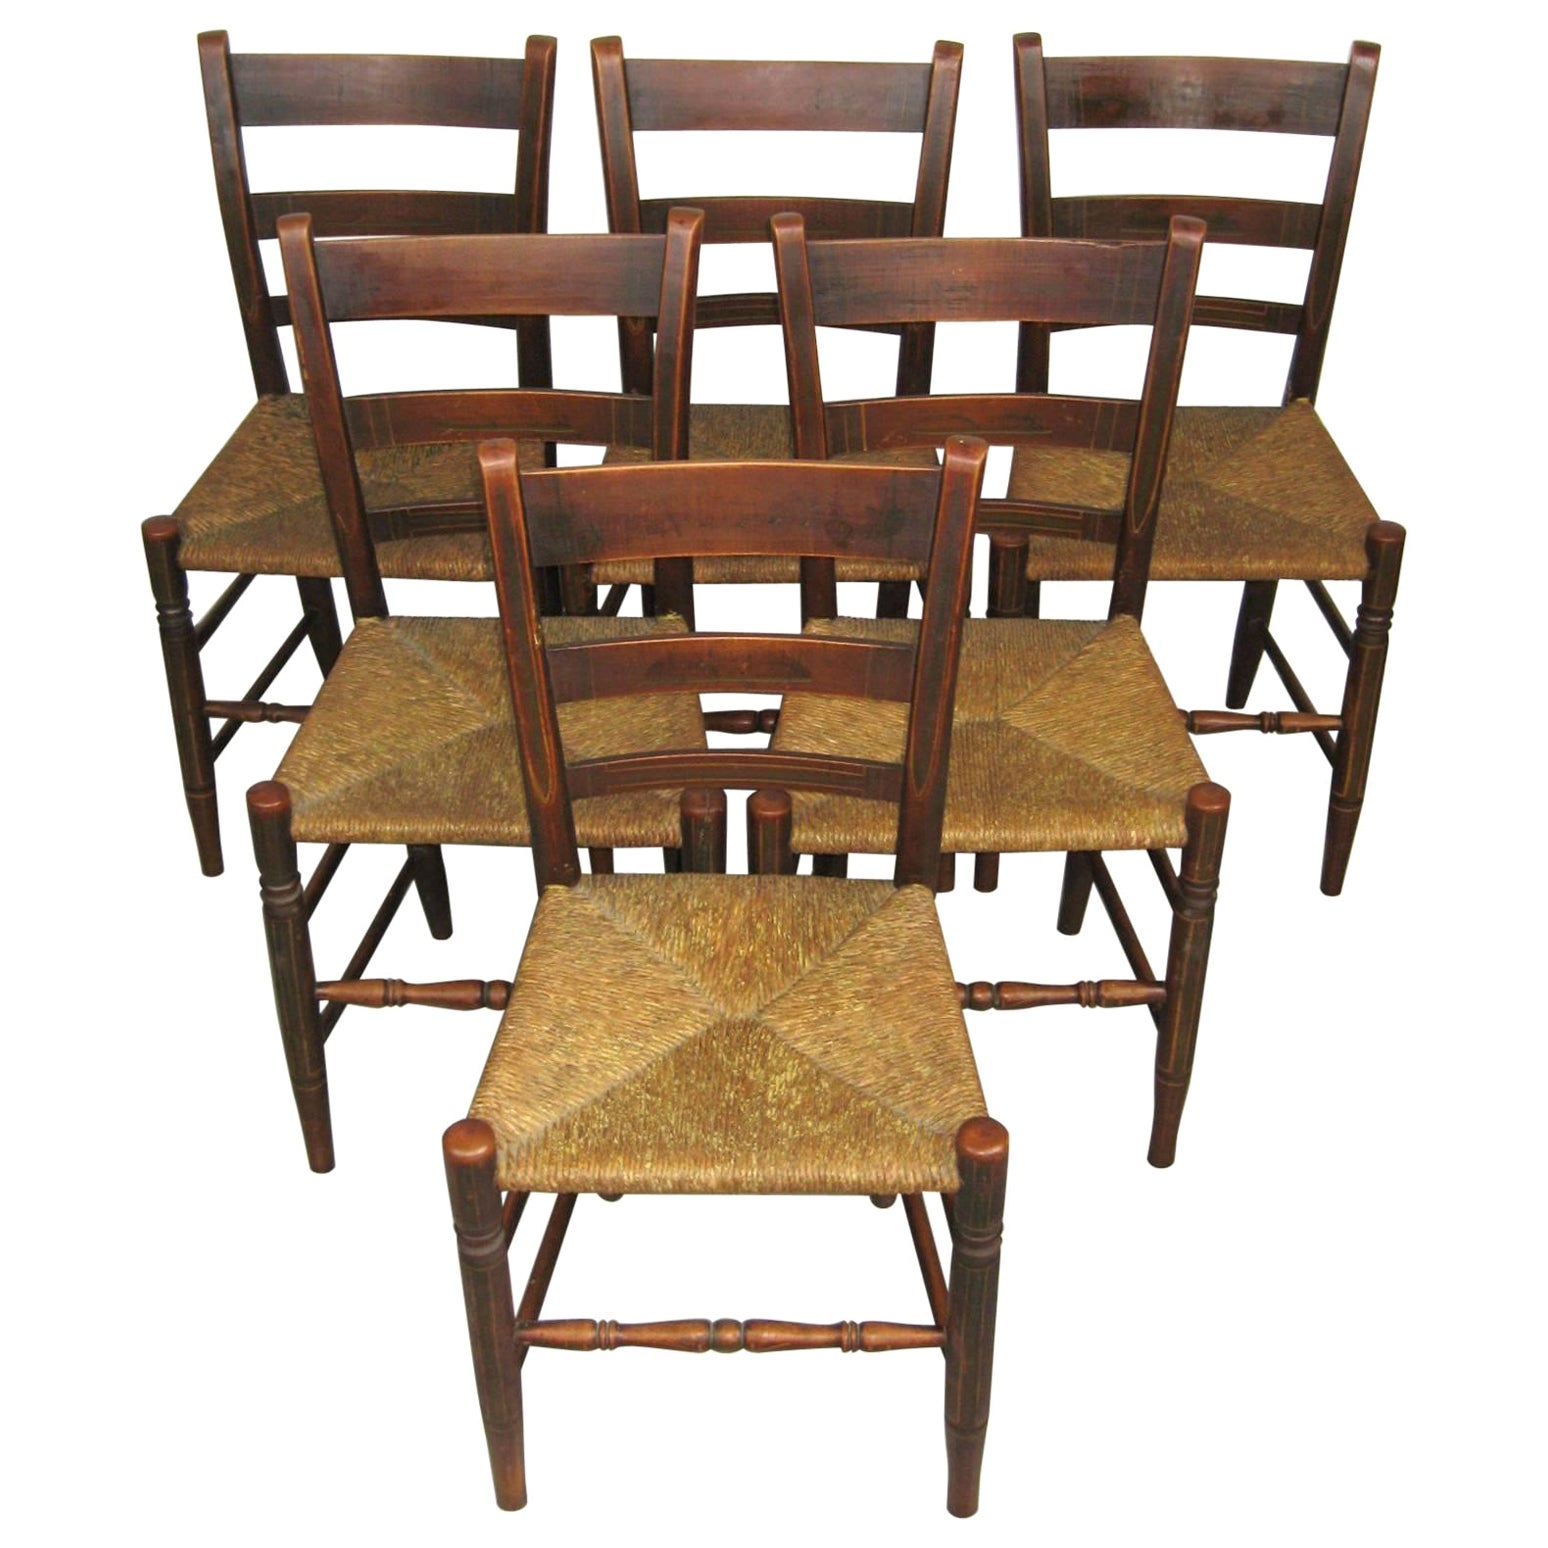 Ensemble ancien de six chaises à dossier en échelle Rush Seat des années 1820, décorées de peintures 